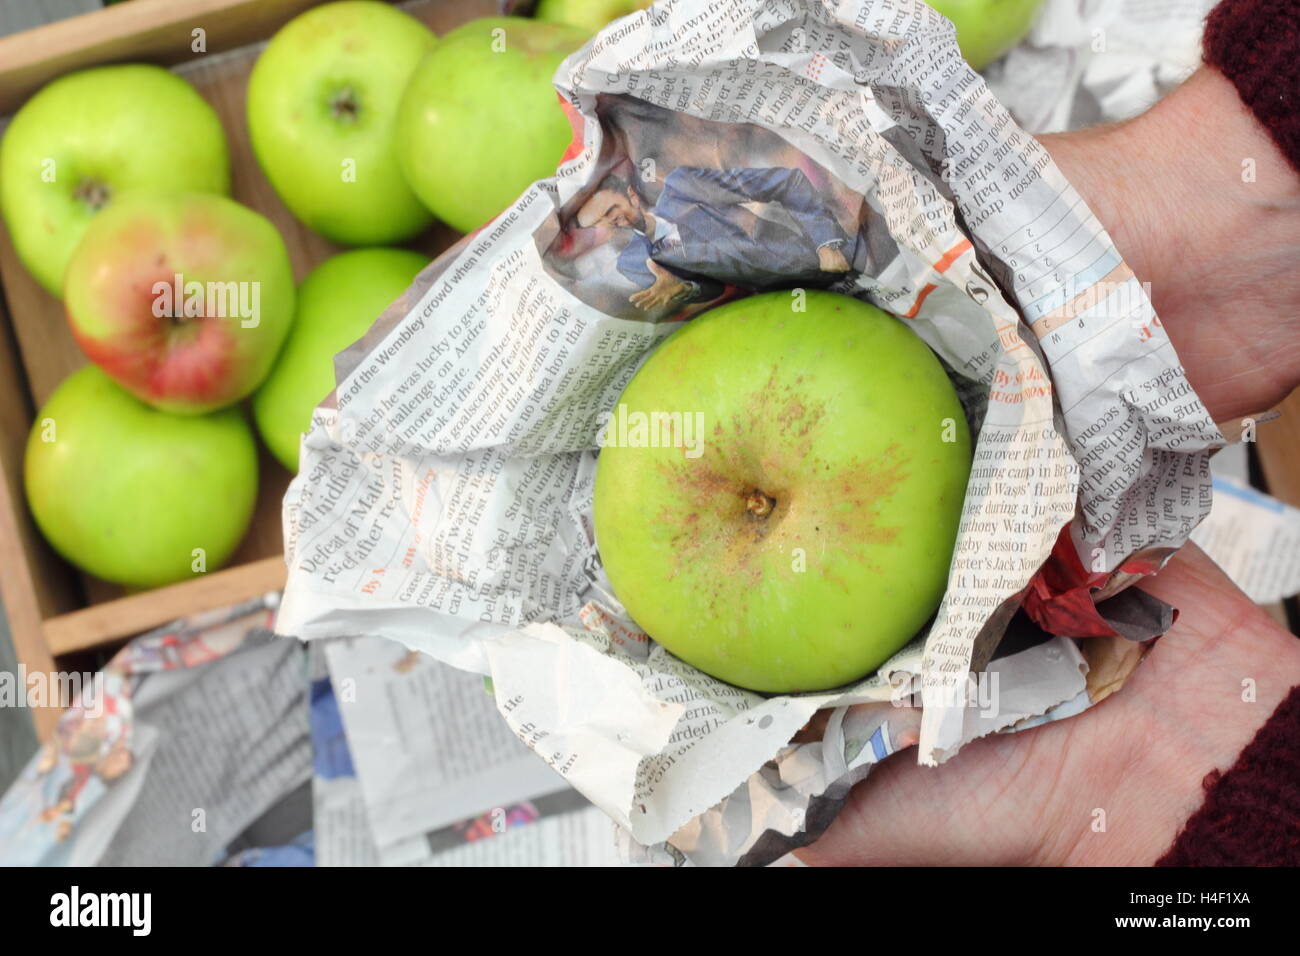 Frais, pommes Bramley sans tache (Malus domestica Bramley's Seedling) sont emballés individuellement dans du papier journal aux fins d'entreposage Banque D'Images